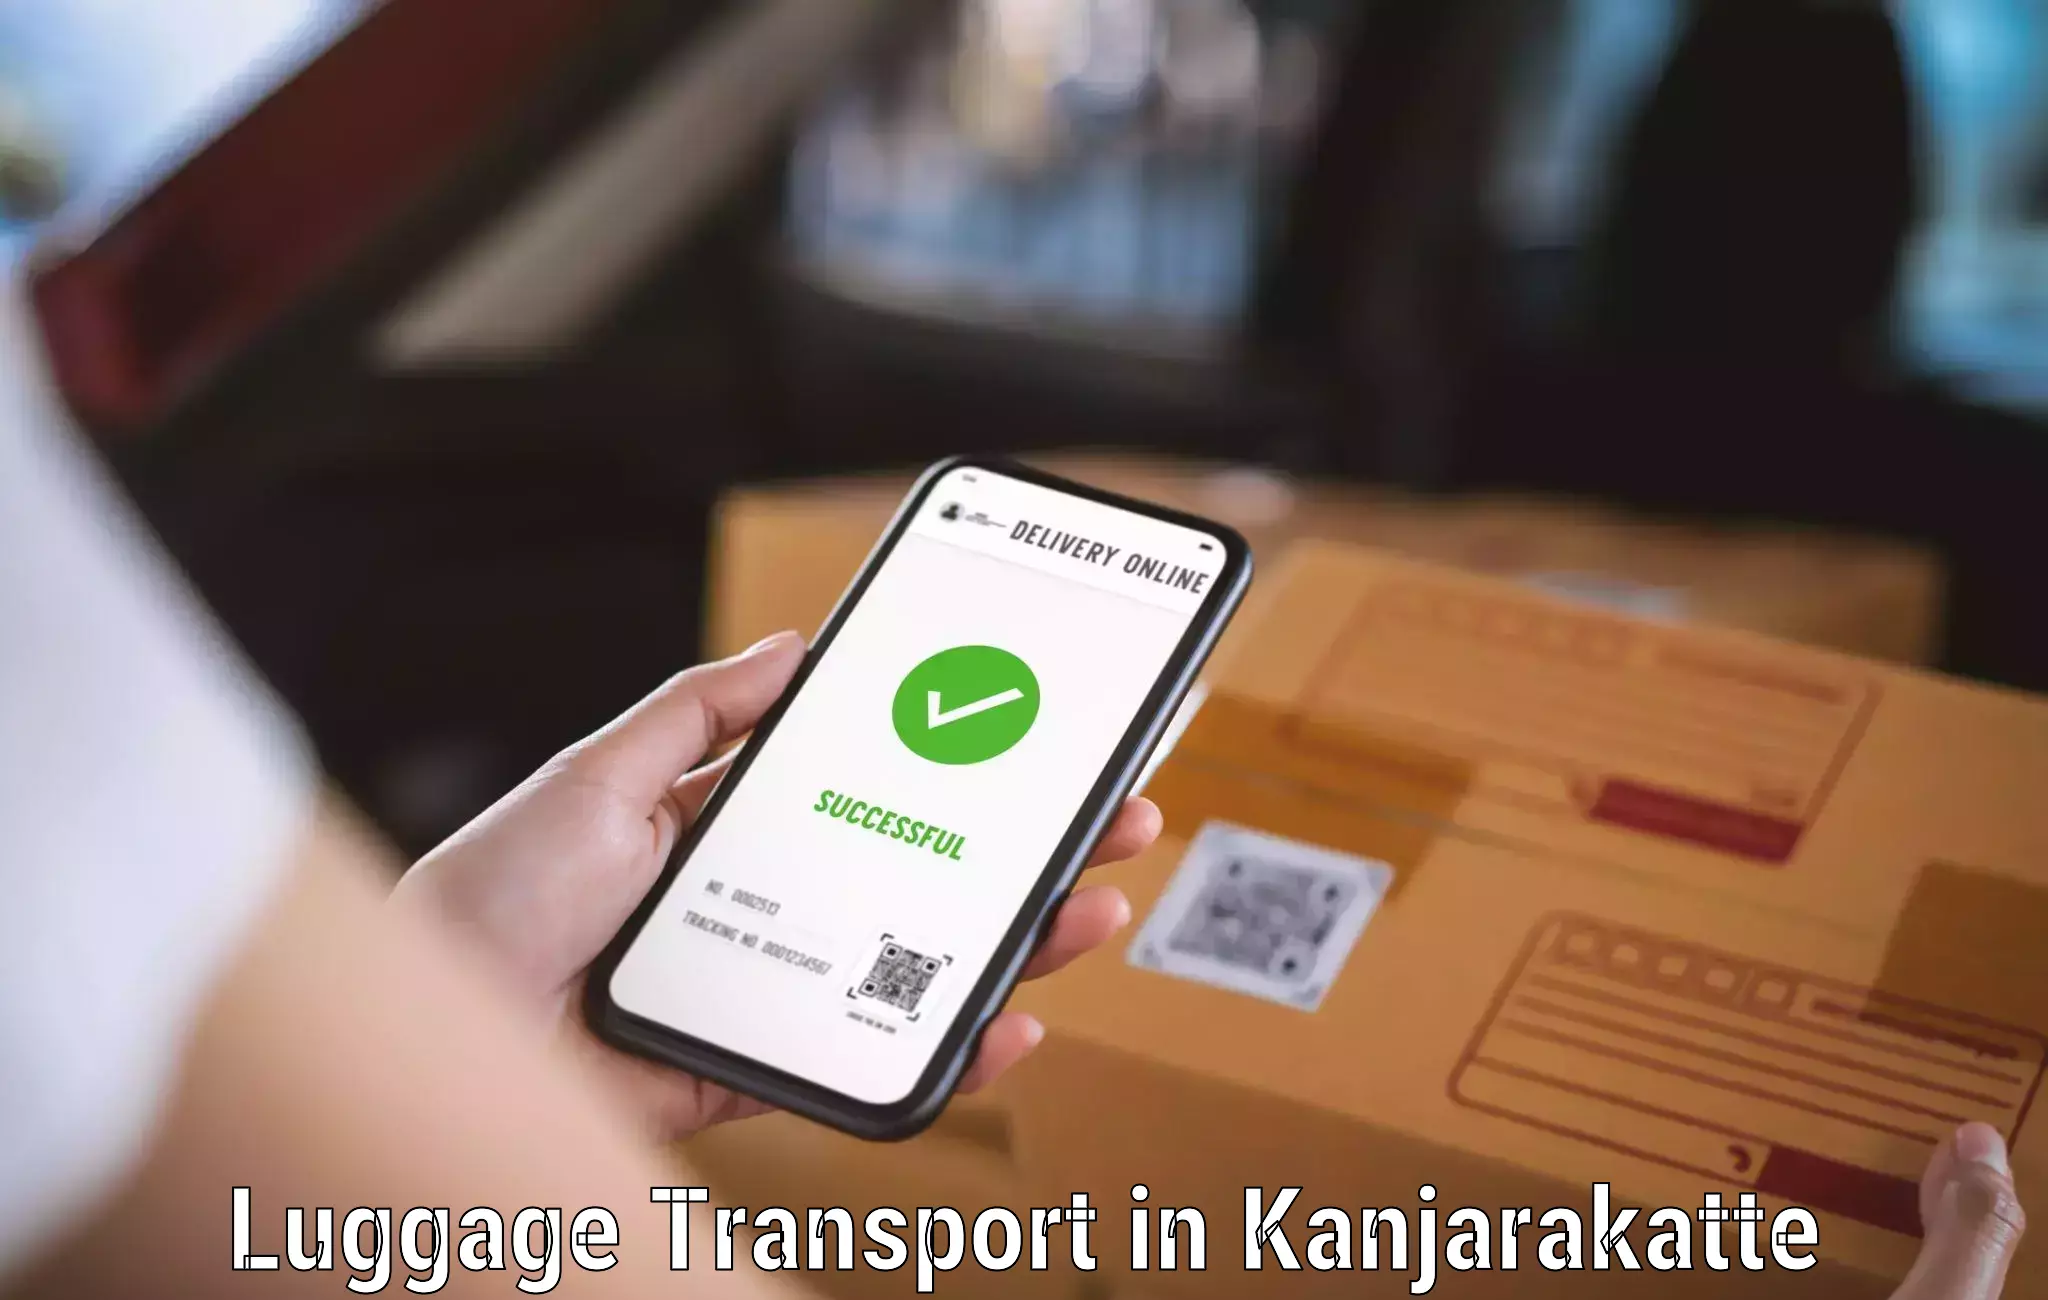 Luggage forwarding service in Kanjarakatte